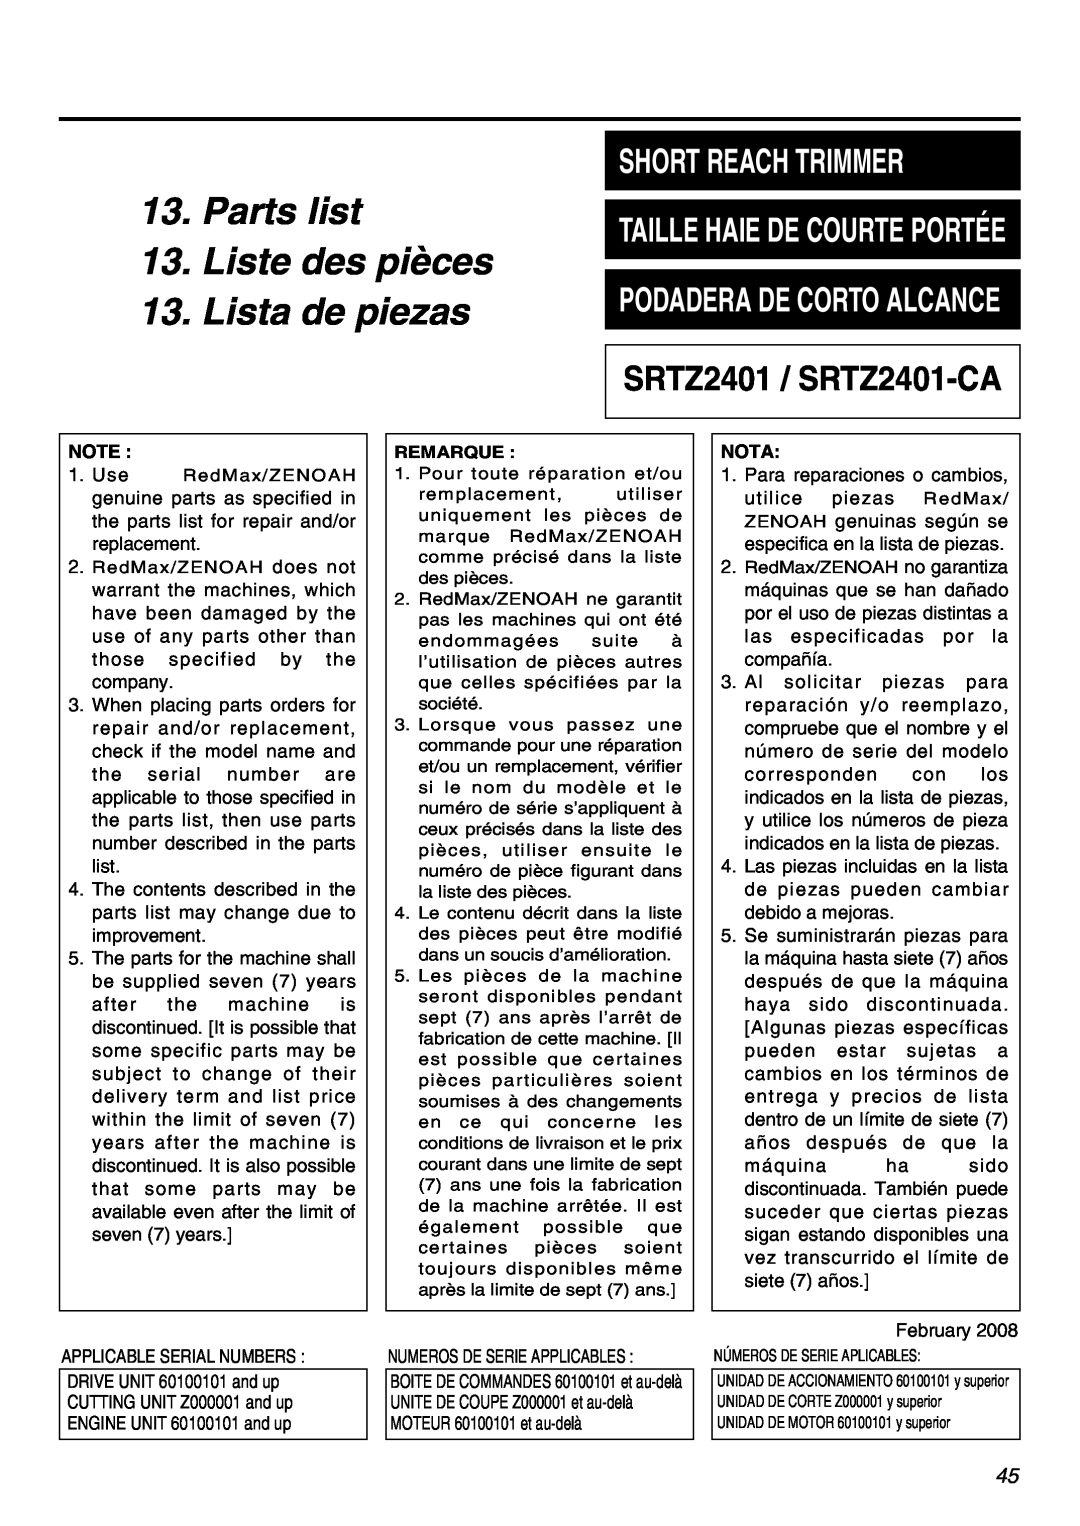 Univex manual Parts list 13. Liste des pièces, Taille Haie De Courte Portée, Lista de piezas, SRTZ2401 / SRTZ2401-CA 